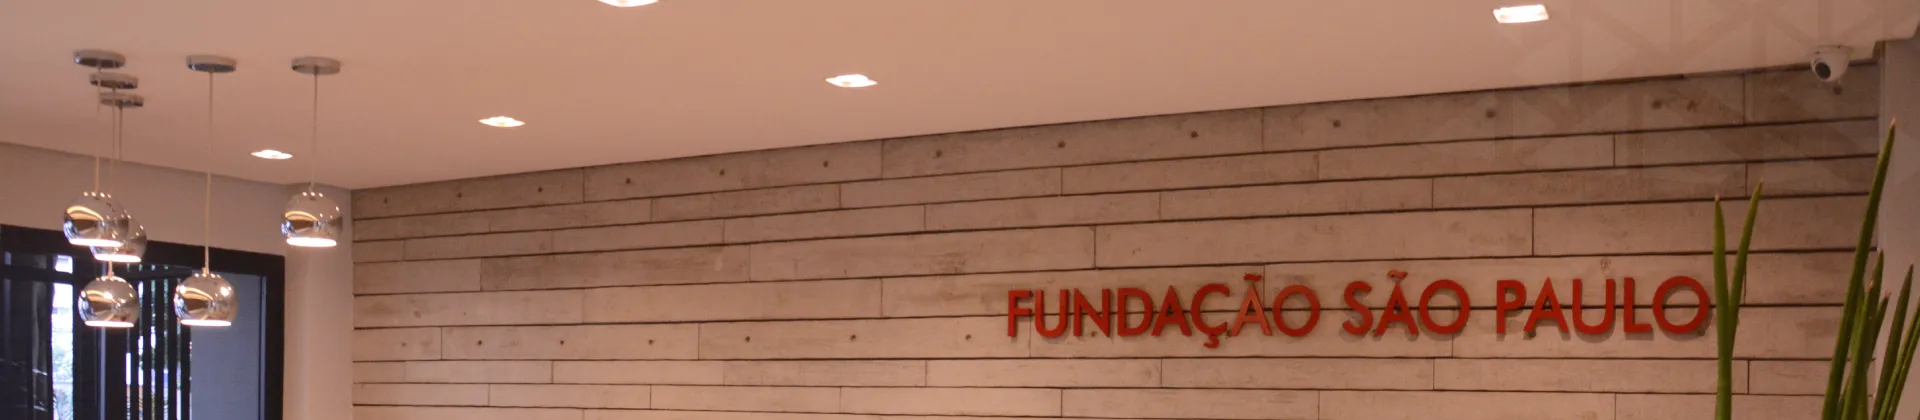 Imagem ilustrativa que mostra um detalhe da entrada da FUNDASP onde se lê 'Fundação São Paulo' na parede